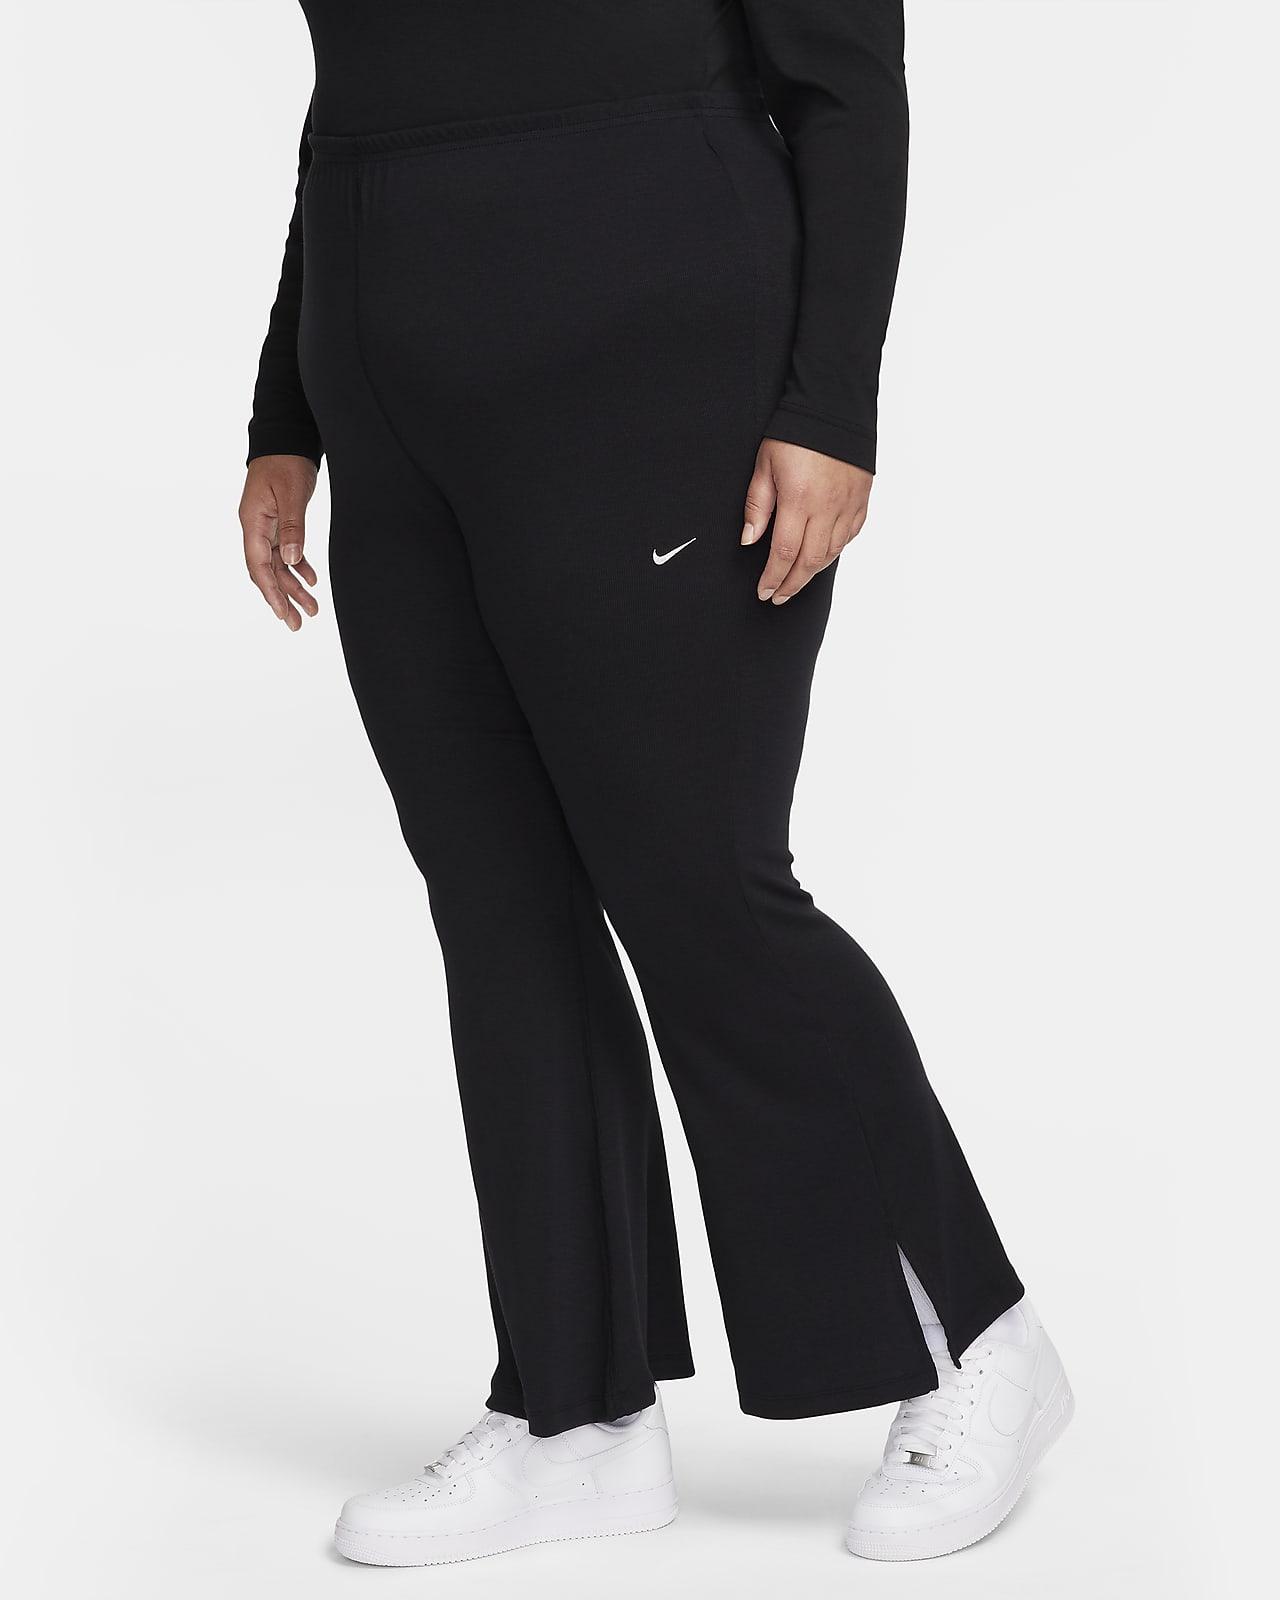 Nike Sportswear Chill Knit Leggings acampanados con elástico mini y ajuste ceñido (Talla grande) - Mujer